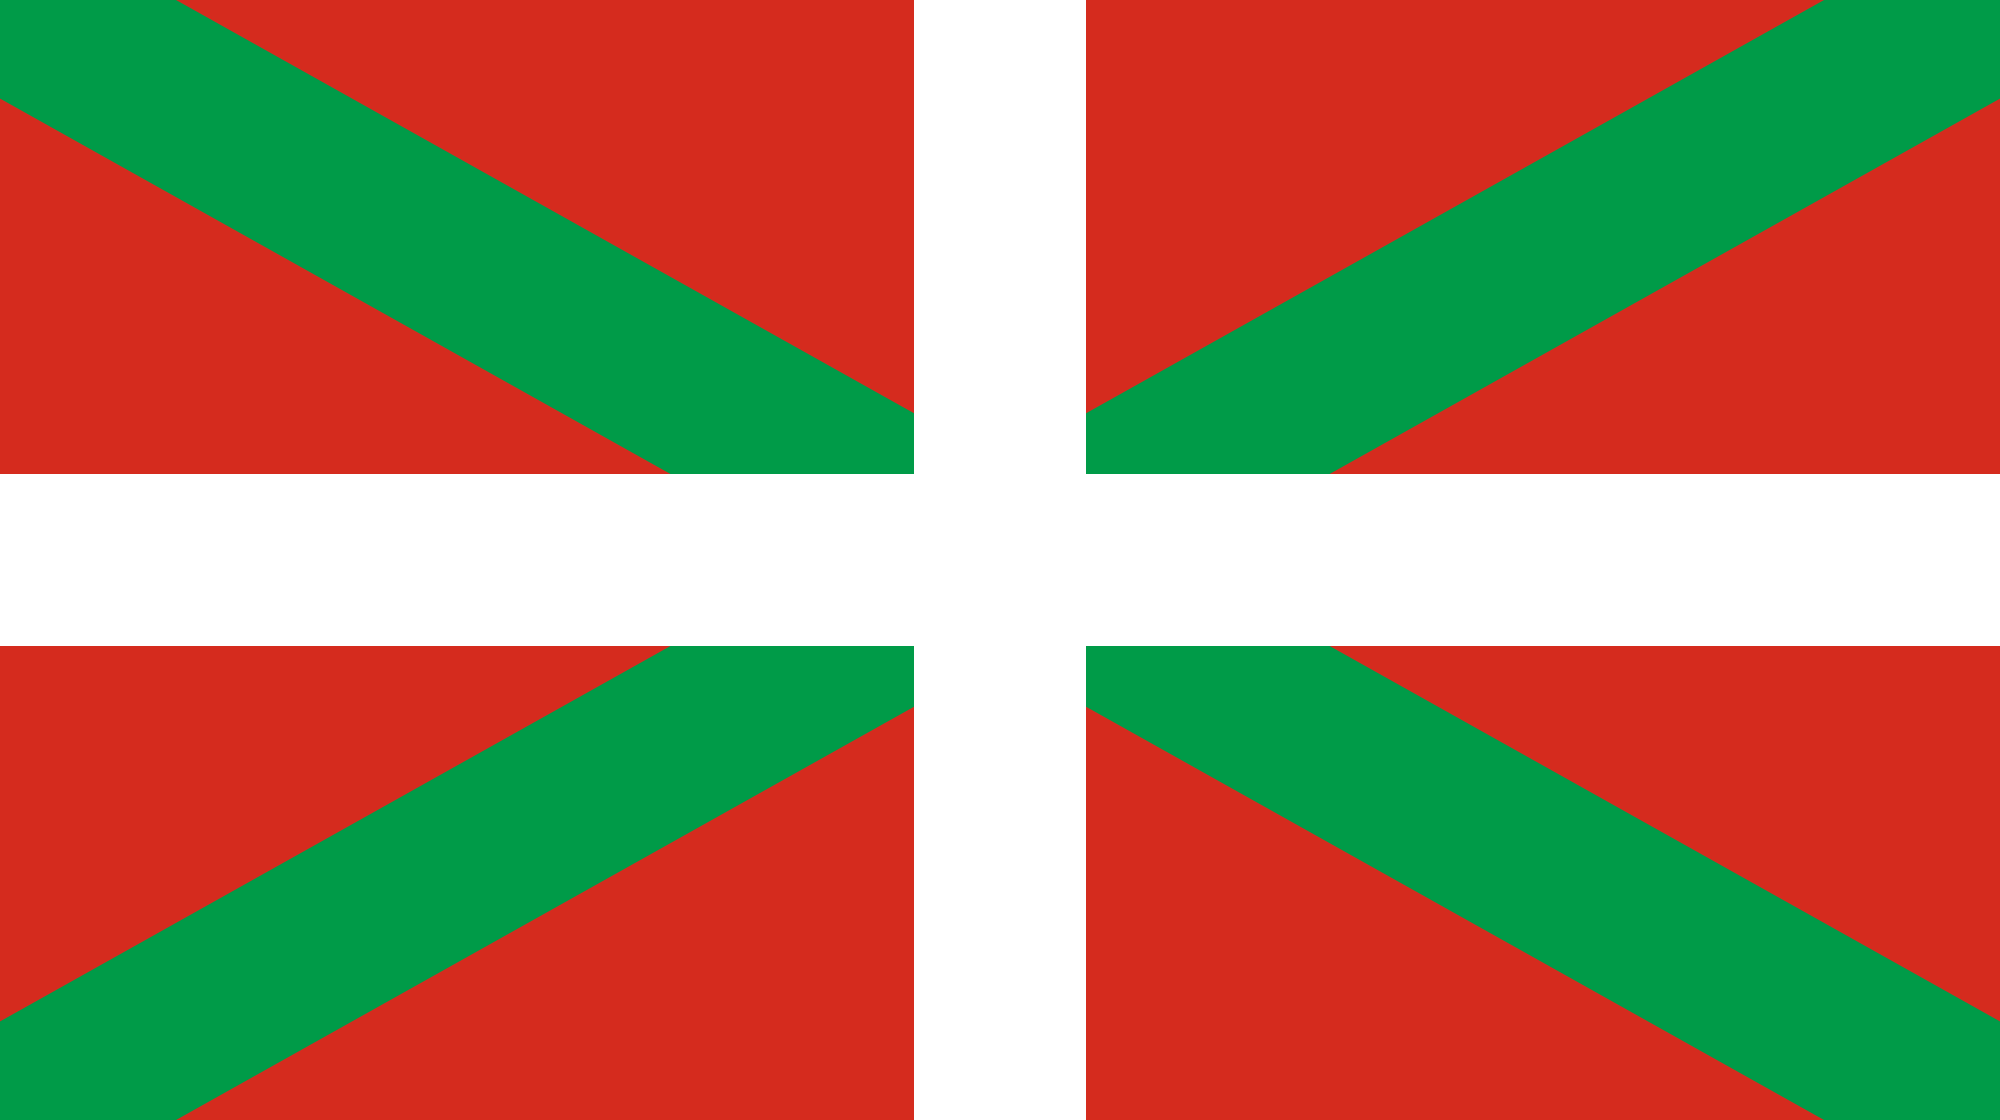 White Flag On a Red Cross Logo - Ikurriña